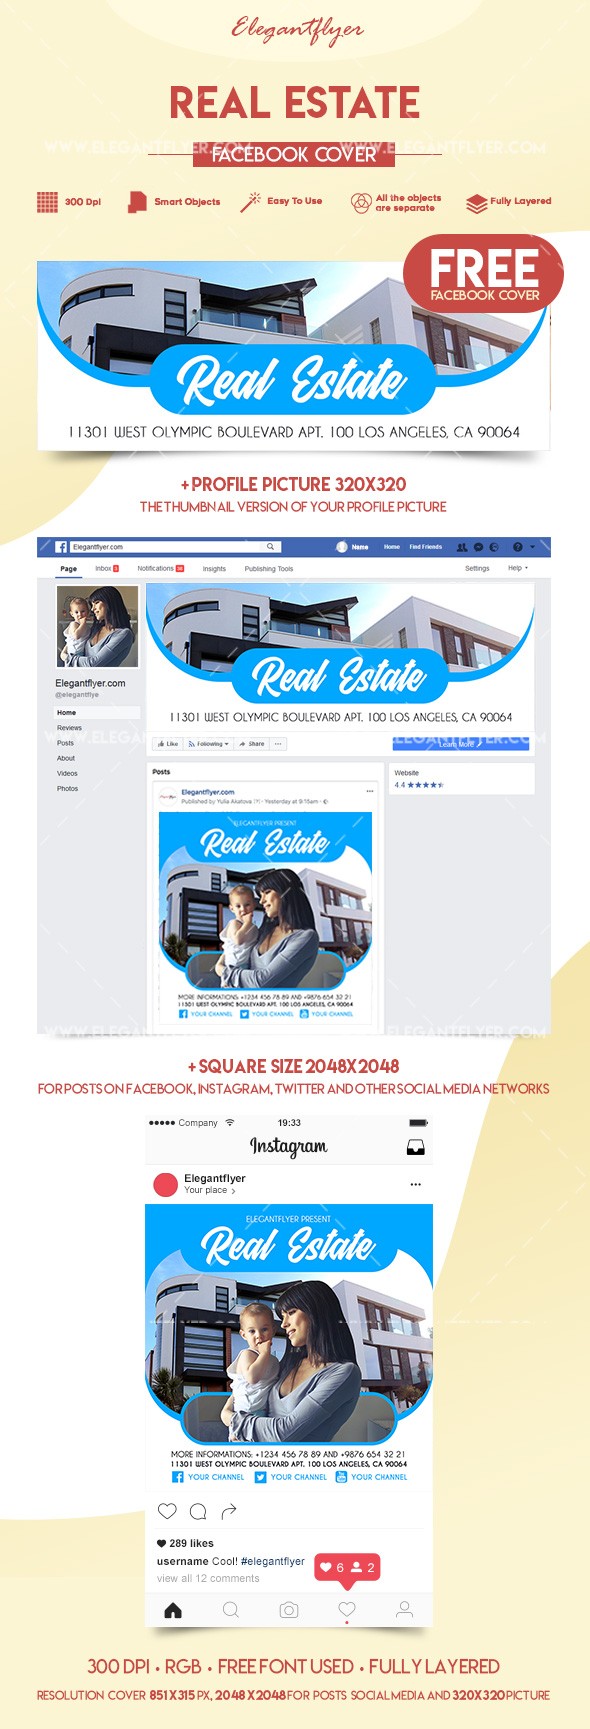 Real Estate Facebook by ElegantFlyer